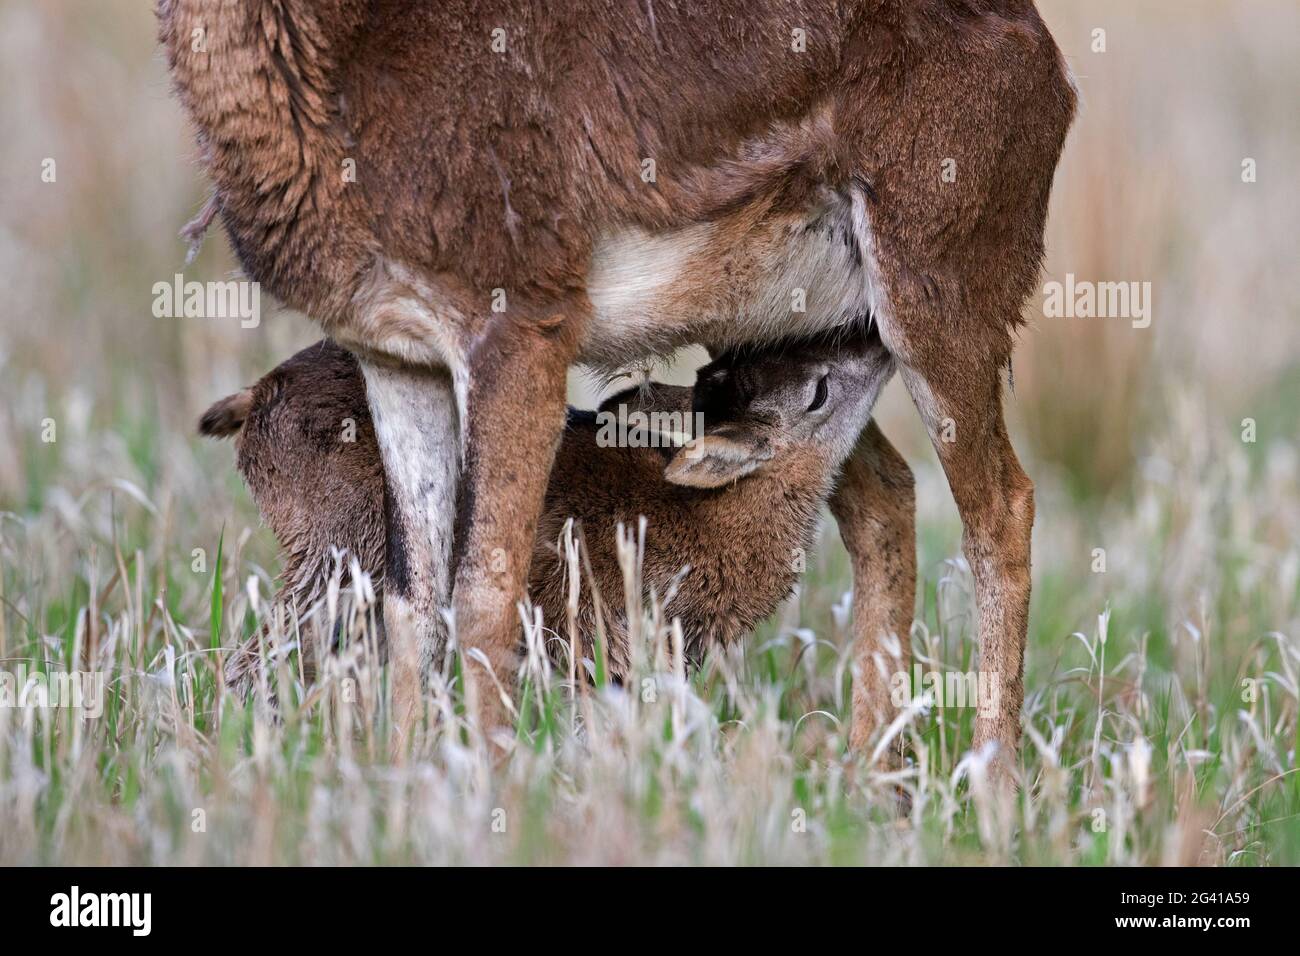 Mouflon européen (Ovis gmelini musimon / Ovis ammon / Ovis orientalis musimon) brebis / femelle avec agneau de lait dans le pré au printemps Banque D'Images